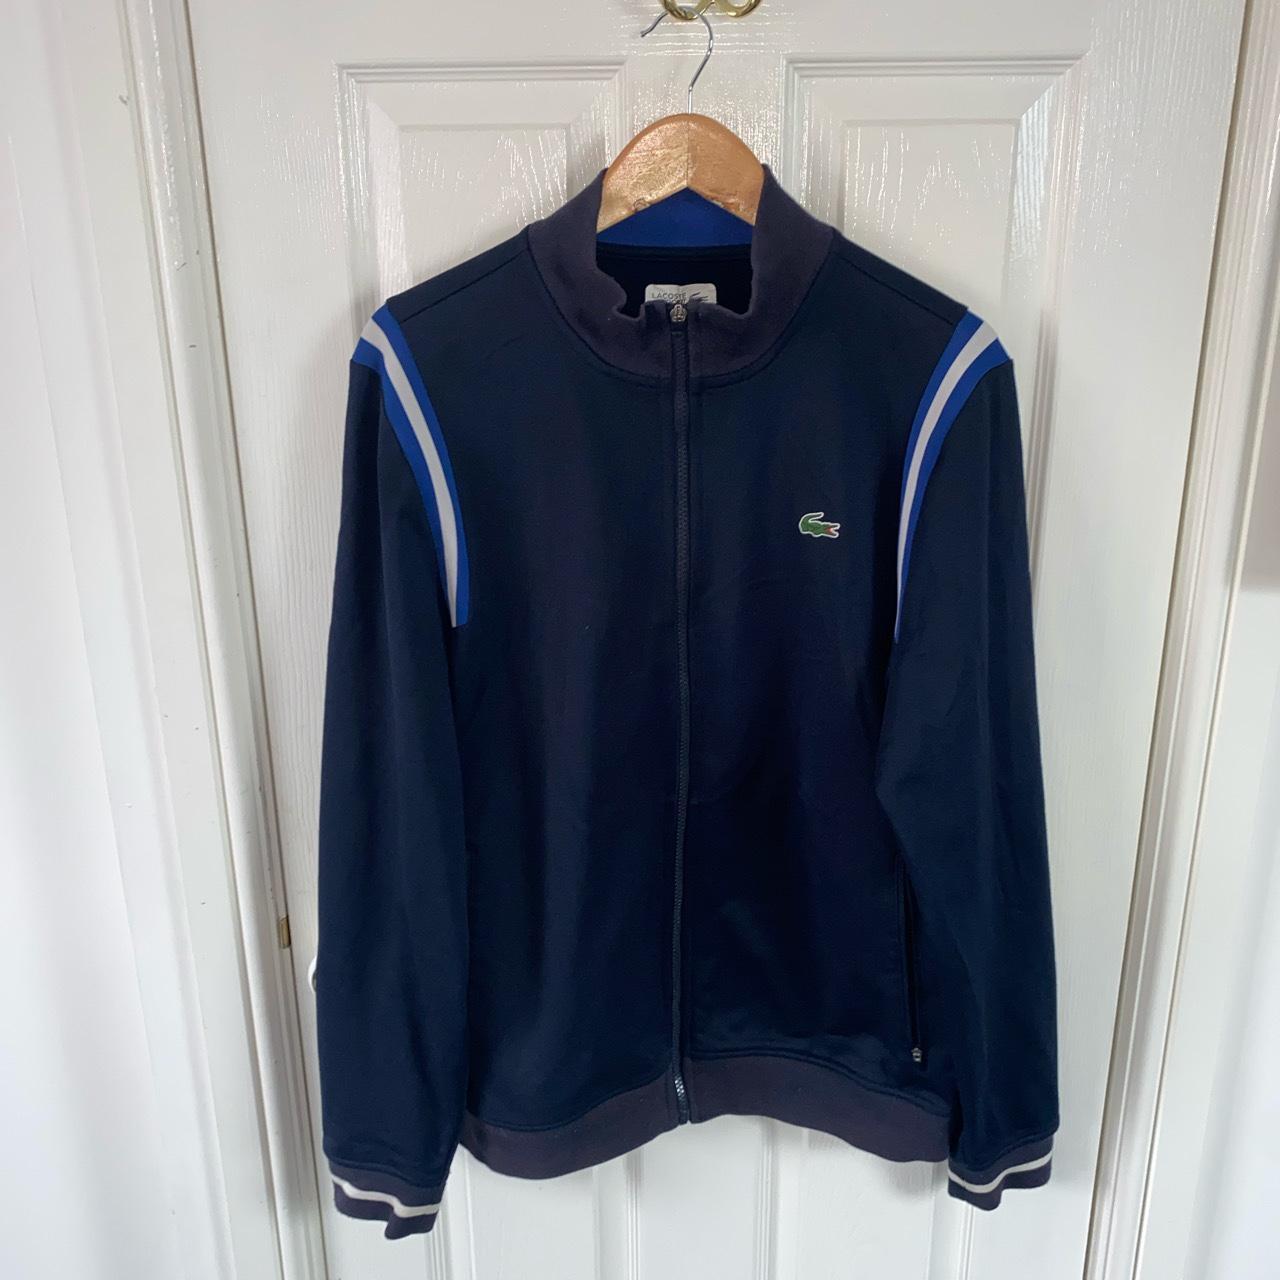 Vintage Lacoste sport track jacket Navy/ blue/... - Depop